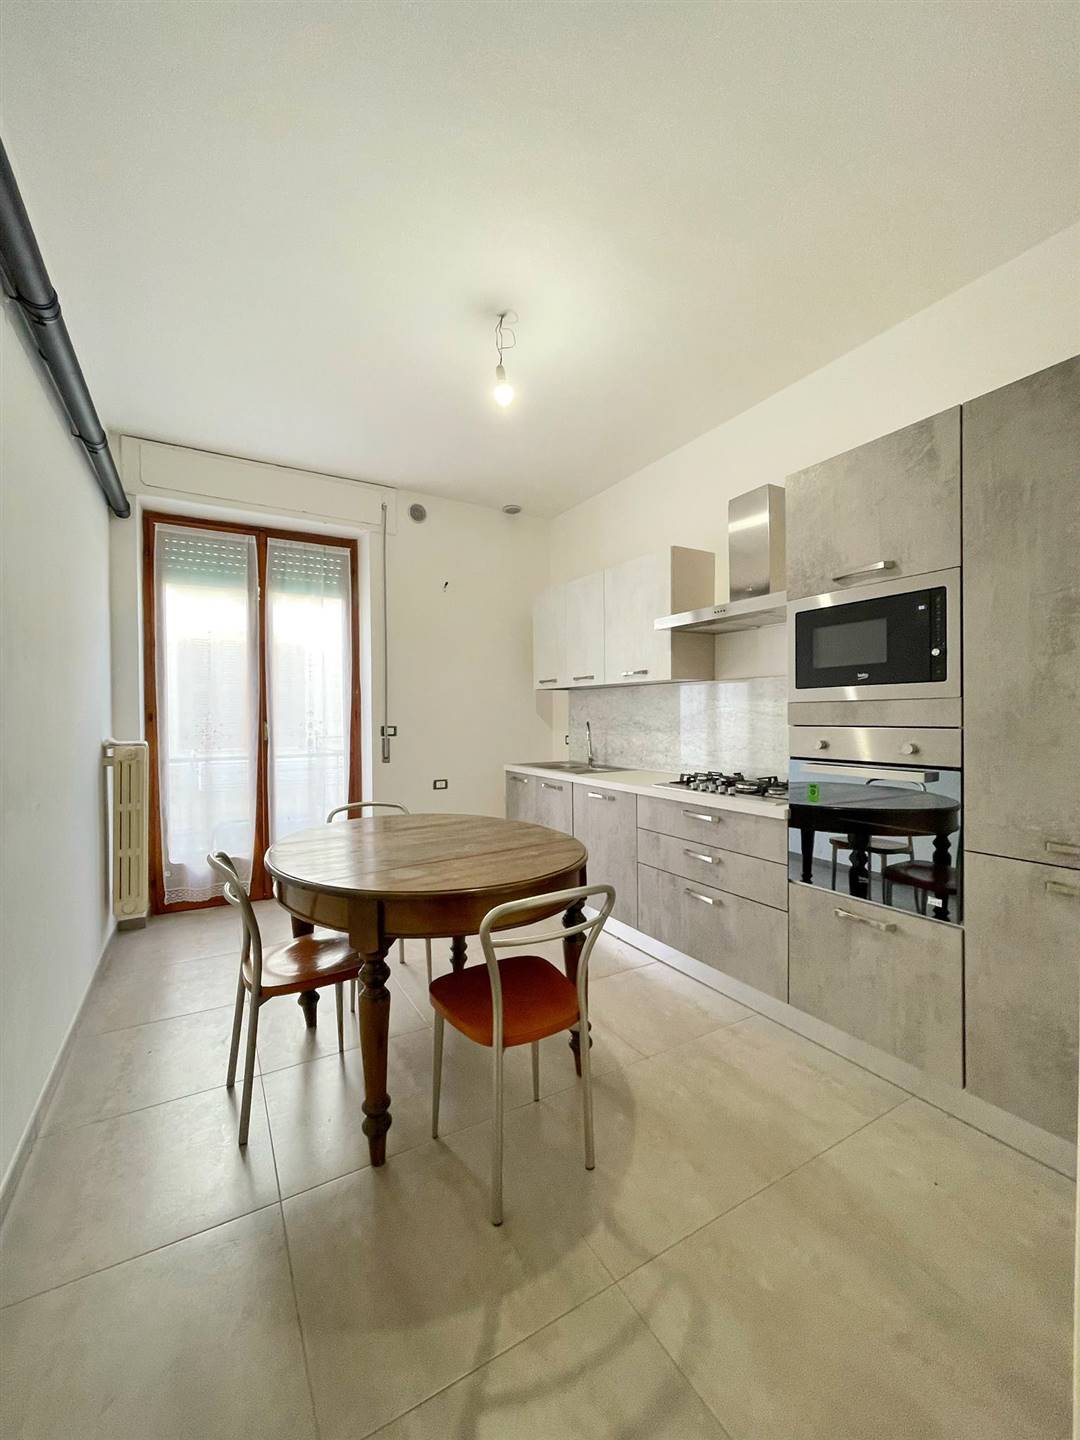 In zona centralissima, nei pressi di Corso San Sabino, proponiamo la vendita di un appartamento di recente ristrutturazione posto al 1° piano di un 